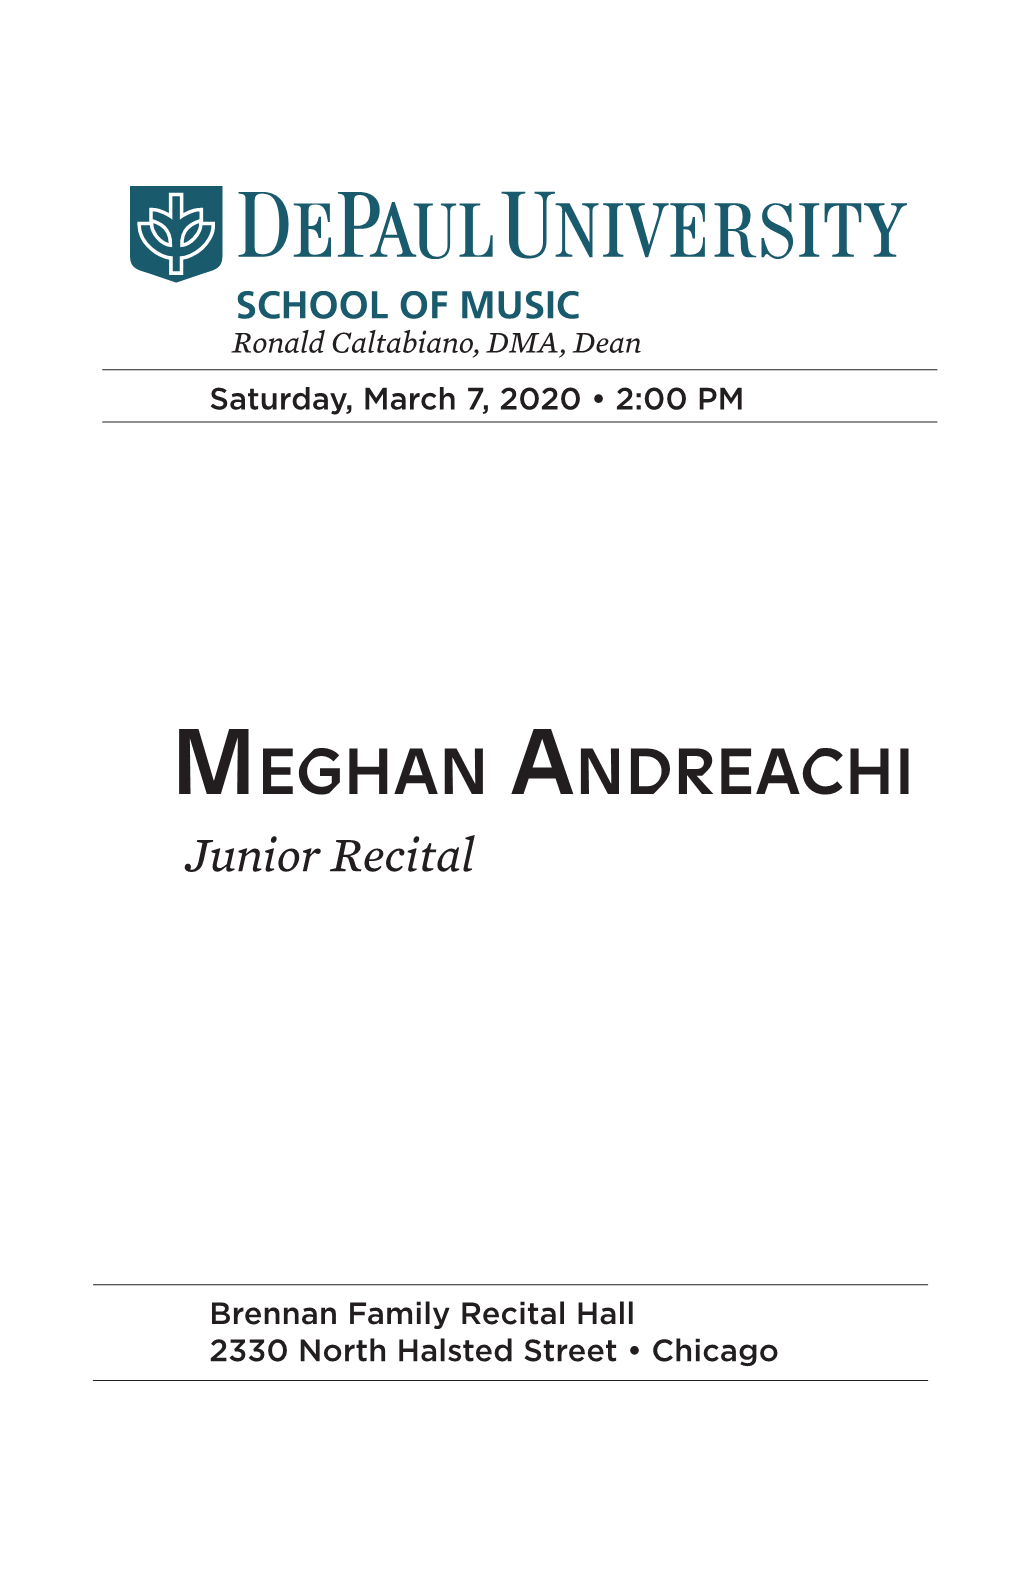 Meghan Andreachi Junior Recital